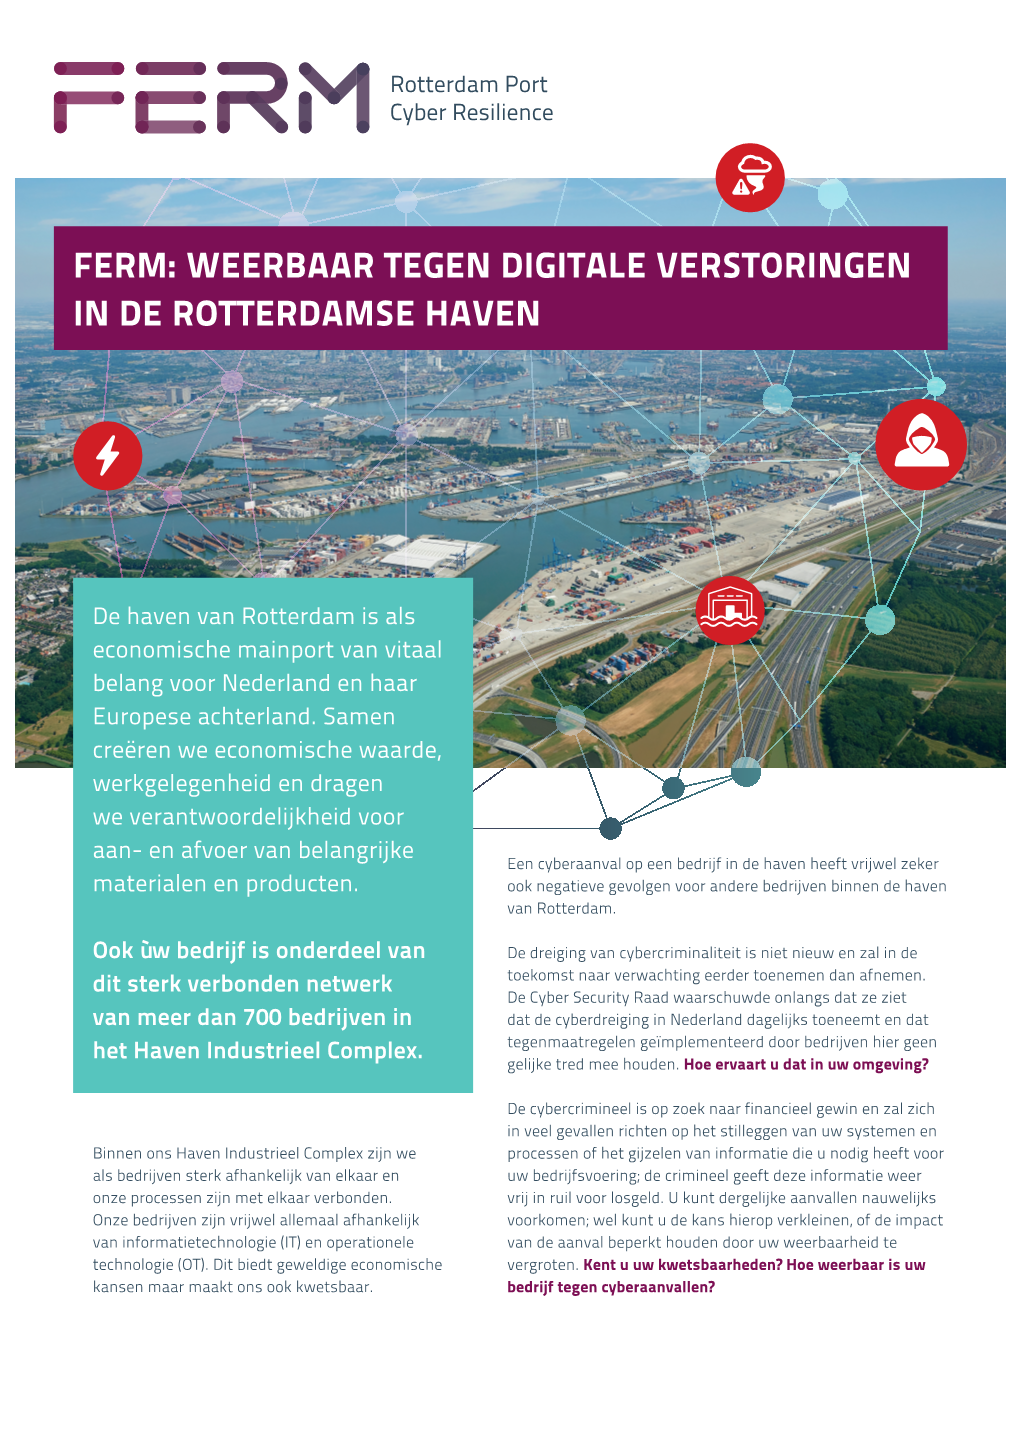 Weerbaar Tegen Digitale Verstoringen in De Rotterdamse Haven